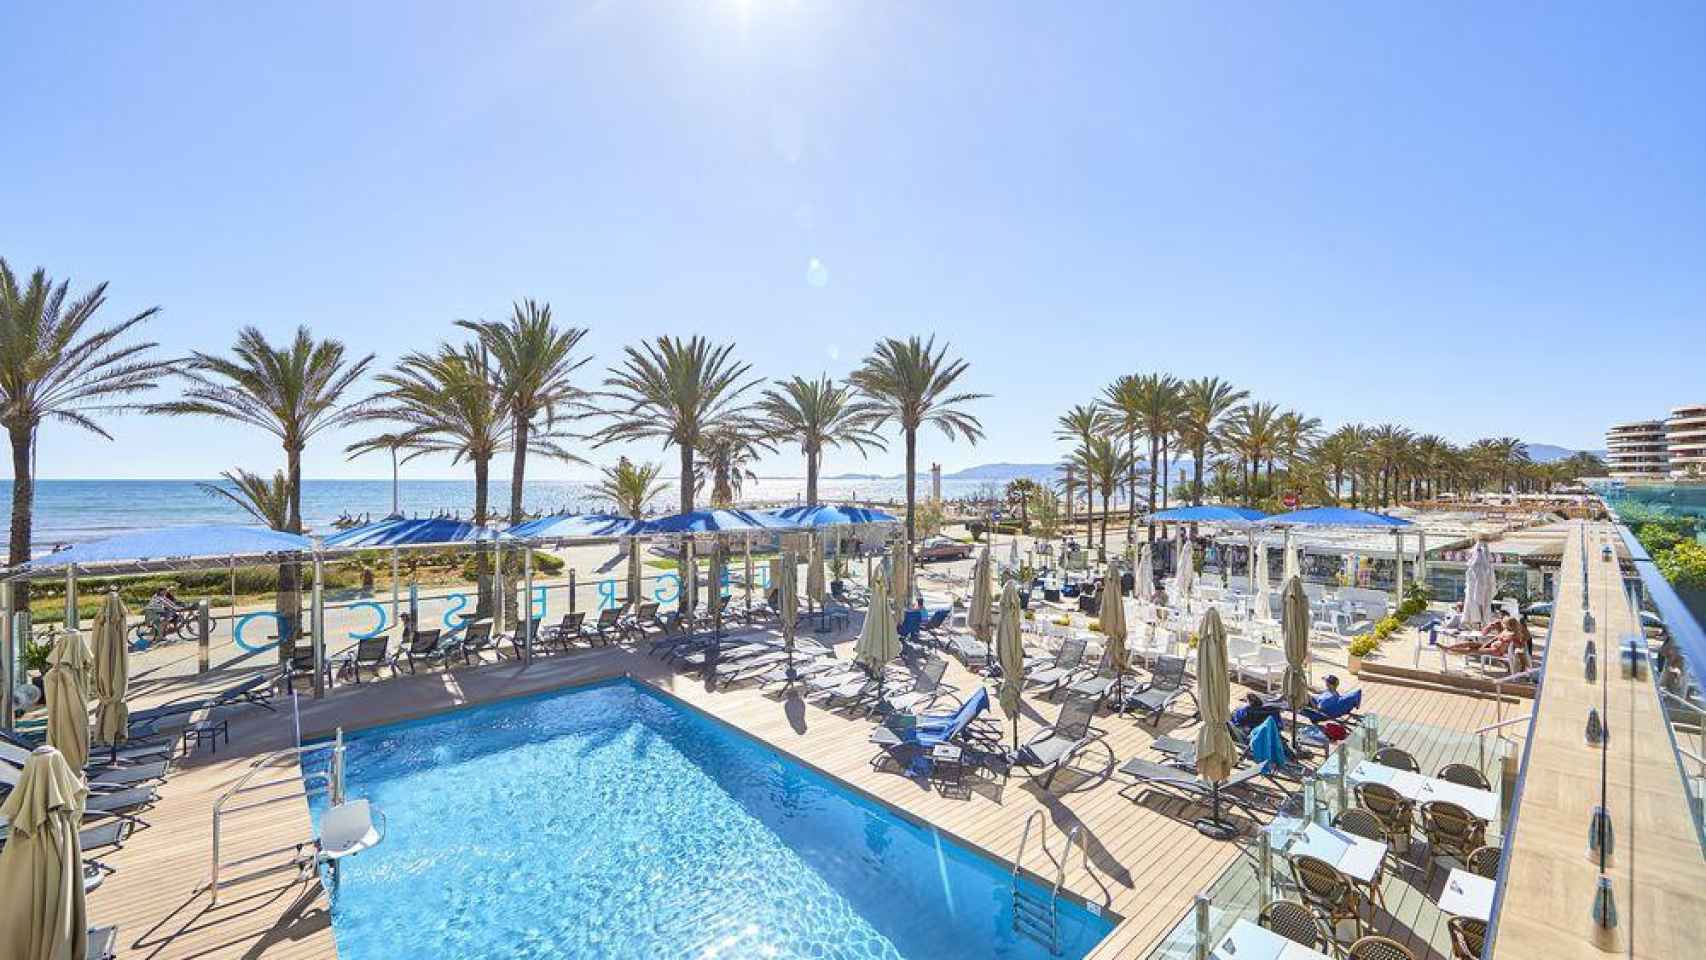 Los hoteleros de Mallorca, tras un mayo bajo mínimos, ven la temporada estival con gran incertidumbre